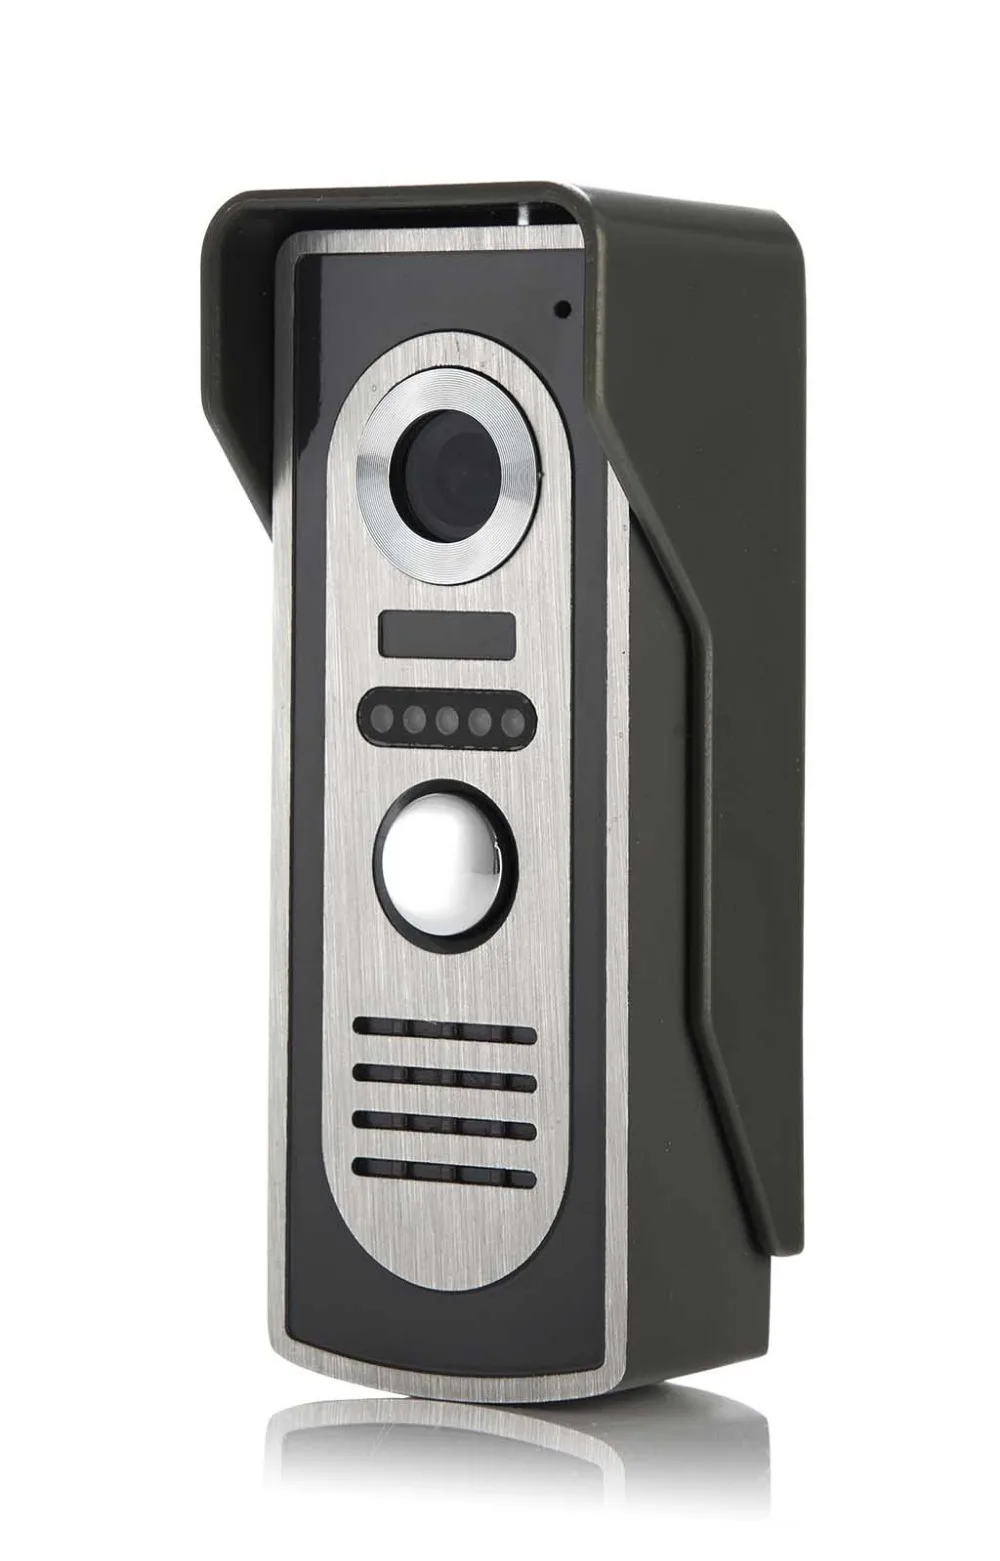 SmartYIBA видеодомофон 7 дюймов монитор проводной видео телефон двери визуальный видео дверной звонок Домофон монитор камера система